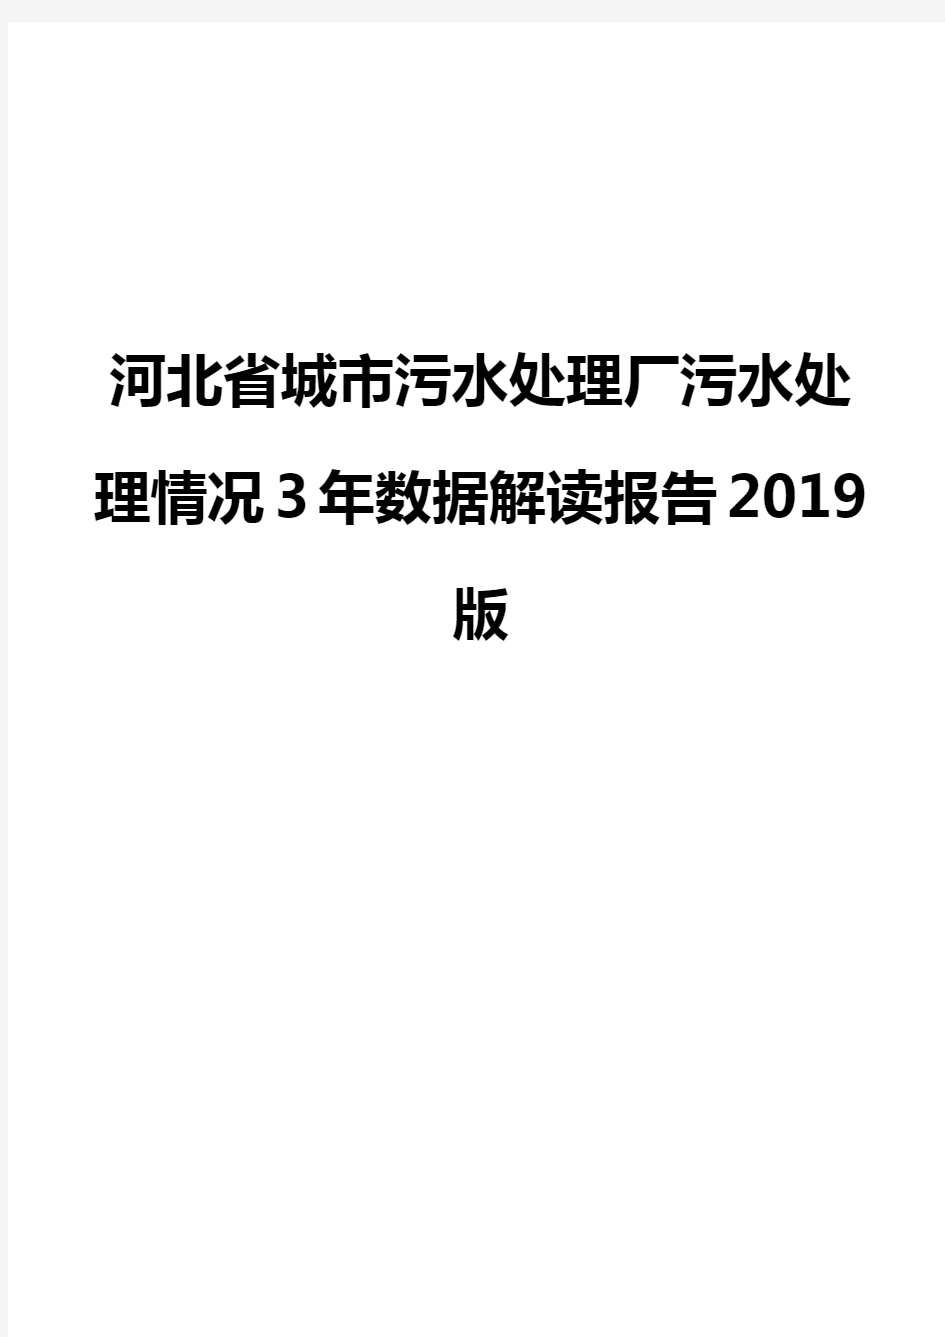 河北省城市污水处理厂污水处理情况3年数据解读报告2019版